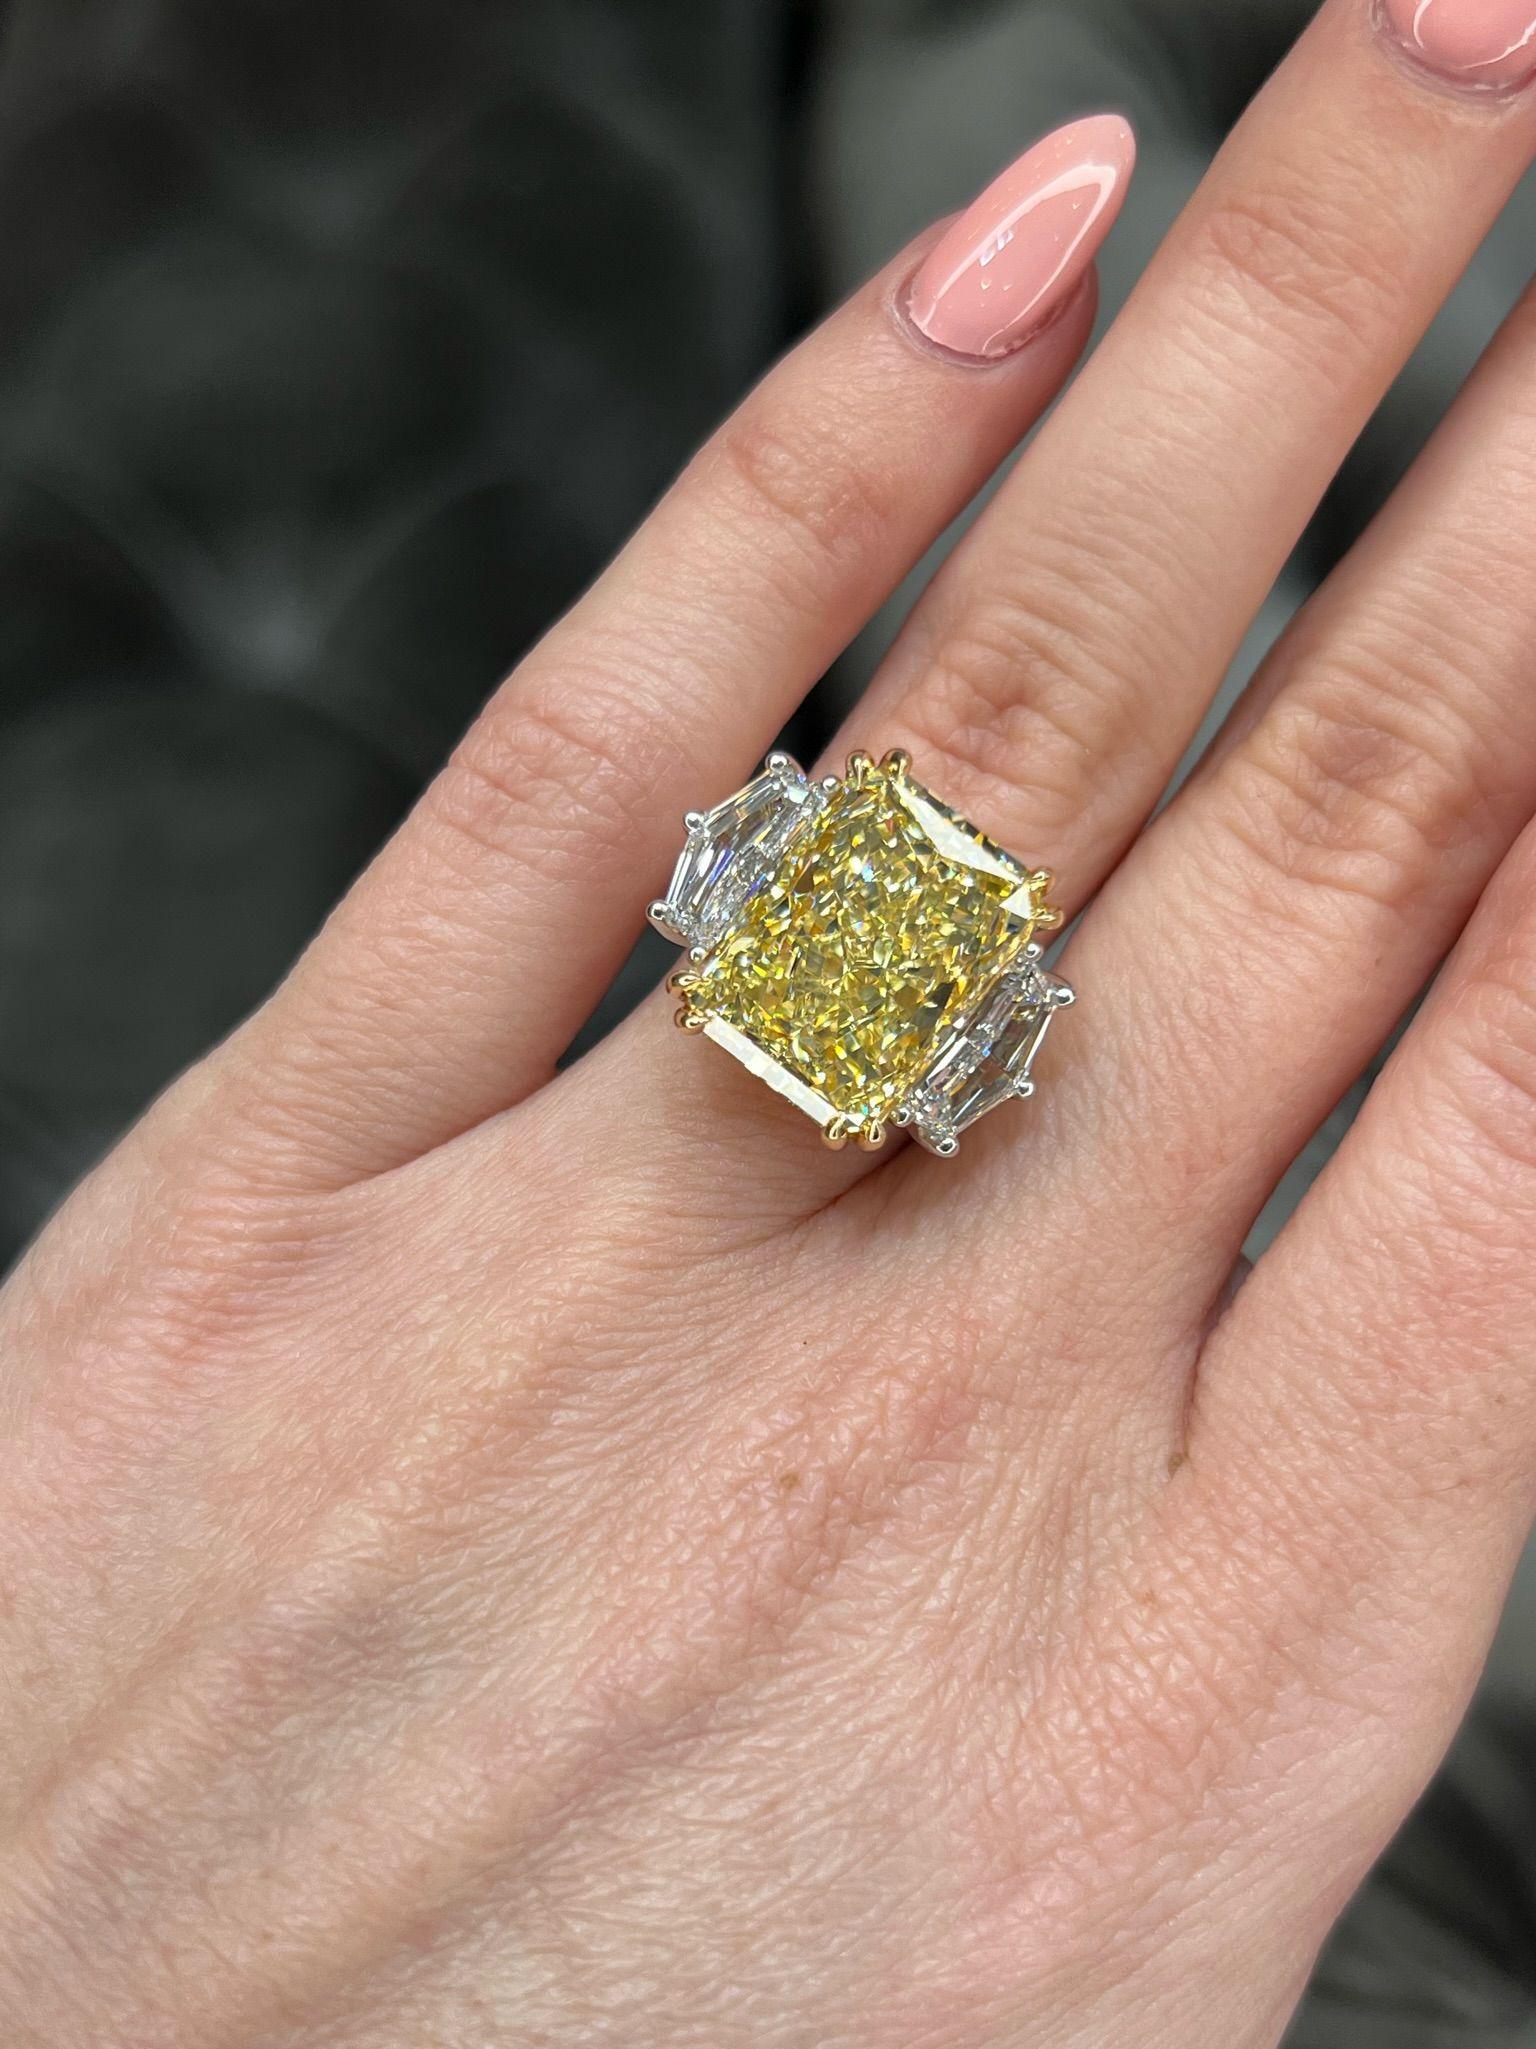 David Rosenberg 11.18 Radiant Fancy Yellow VVS2 GIA Diamond Engagement Ring For Sale 6